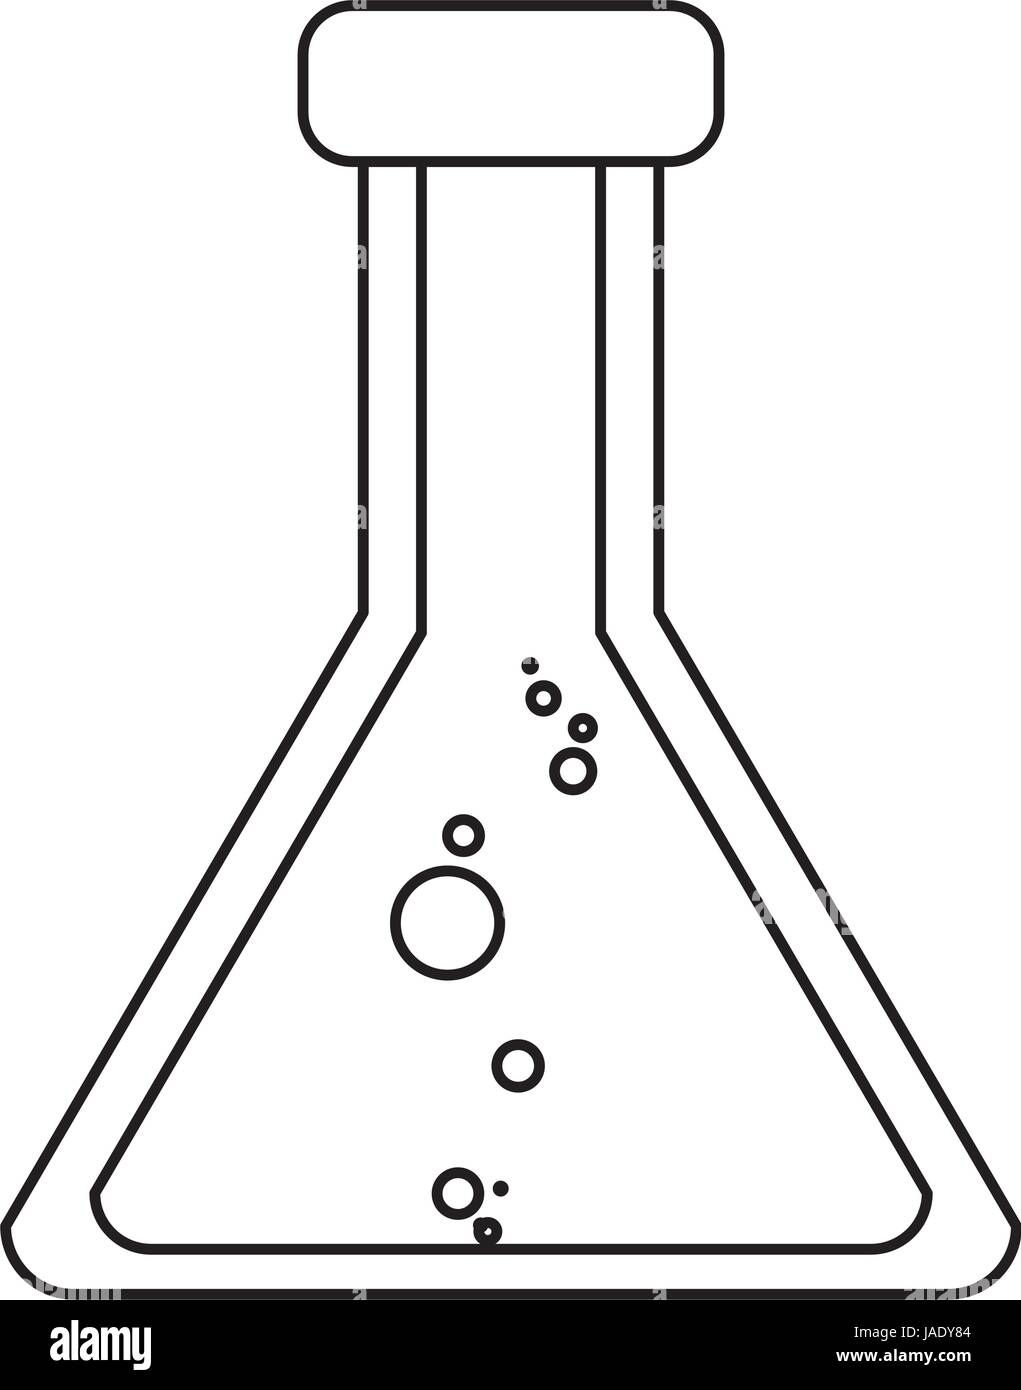 Matraz Erlenmeyer Química Imagen Vector de stock - Alamy